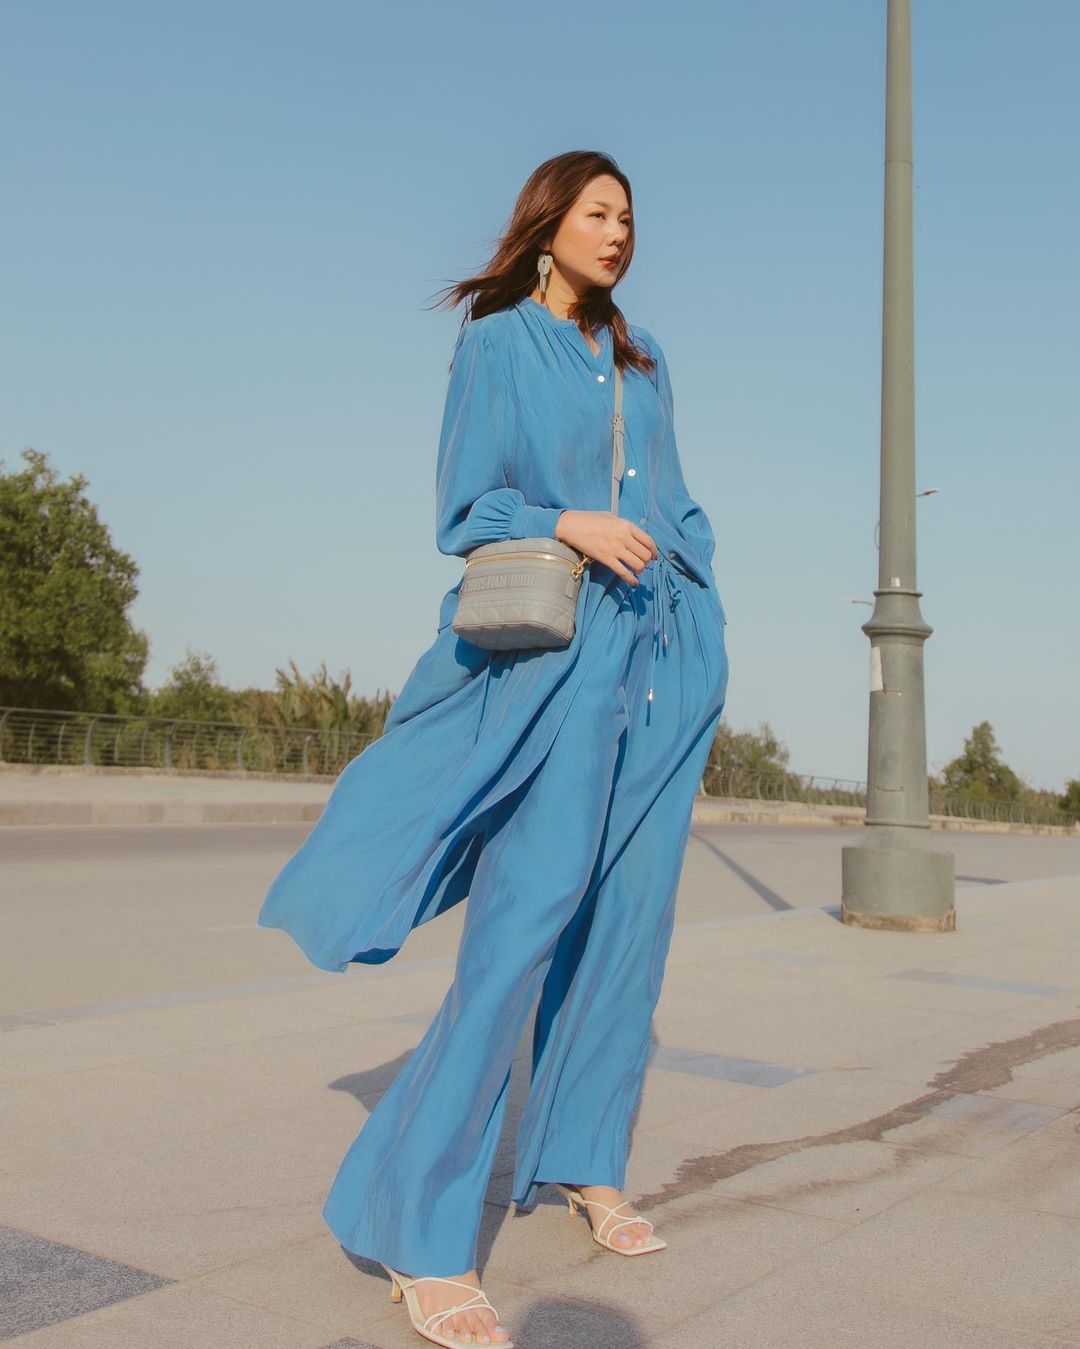 Trong hình ảnh mới đăng tải gần đây của chị đại Thanh Hằng, cô diện bộ cánh màu xanh lam mềm mại, thướt tha, phối với dép cao gót cao mảnh để tăng thêm sự nữ tính, duyên dáng của bộ trang phục.